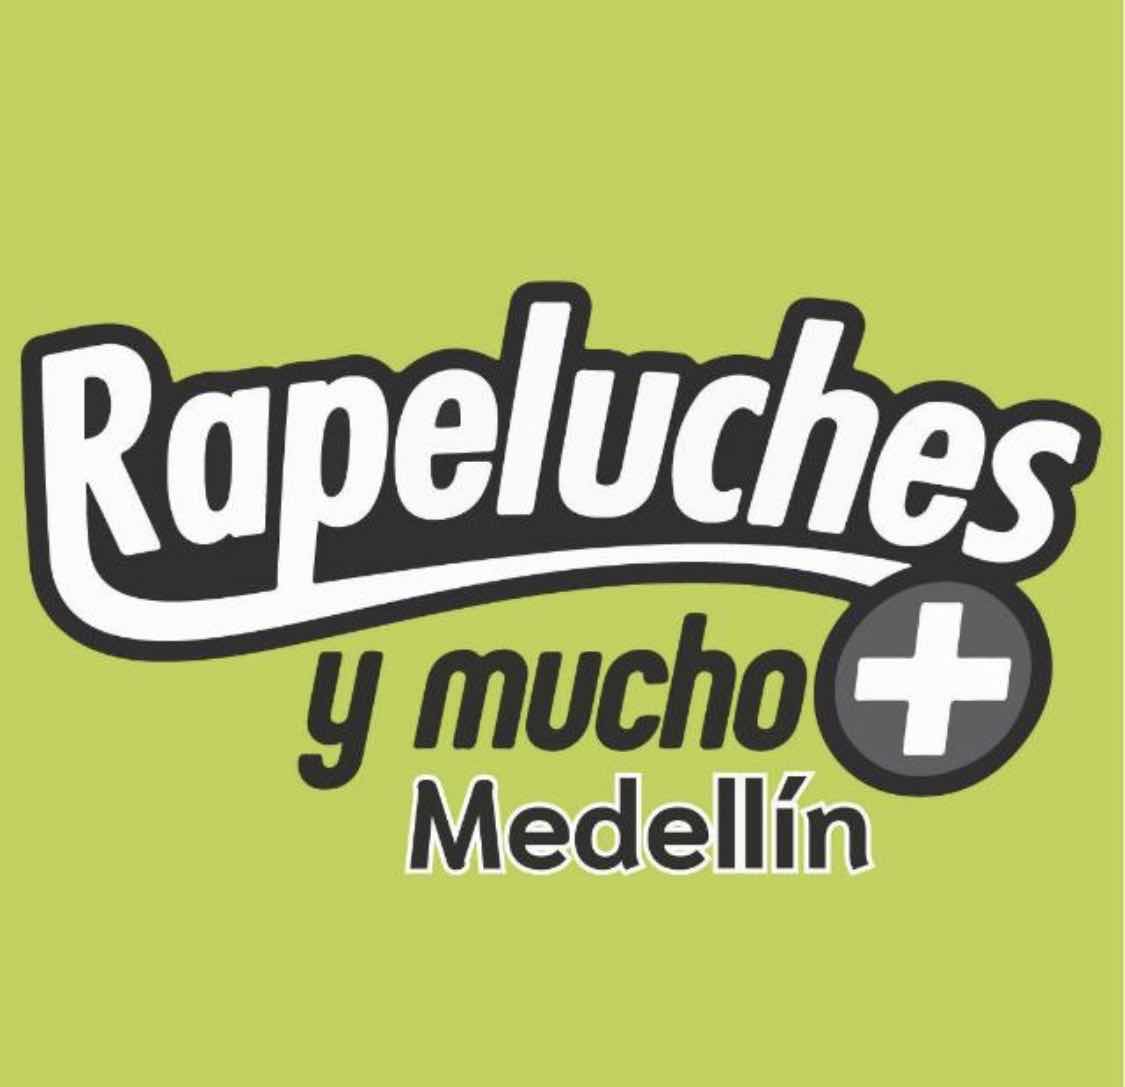 Rapeluches